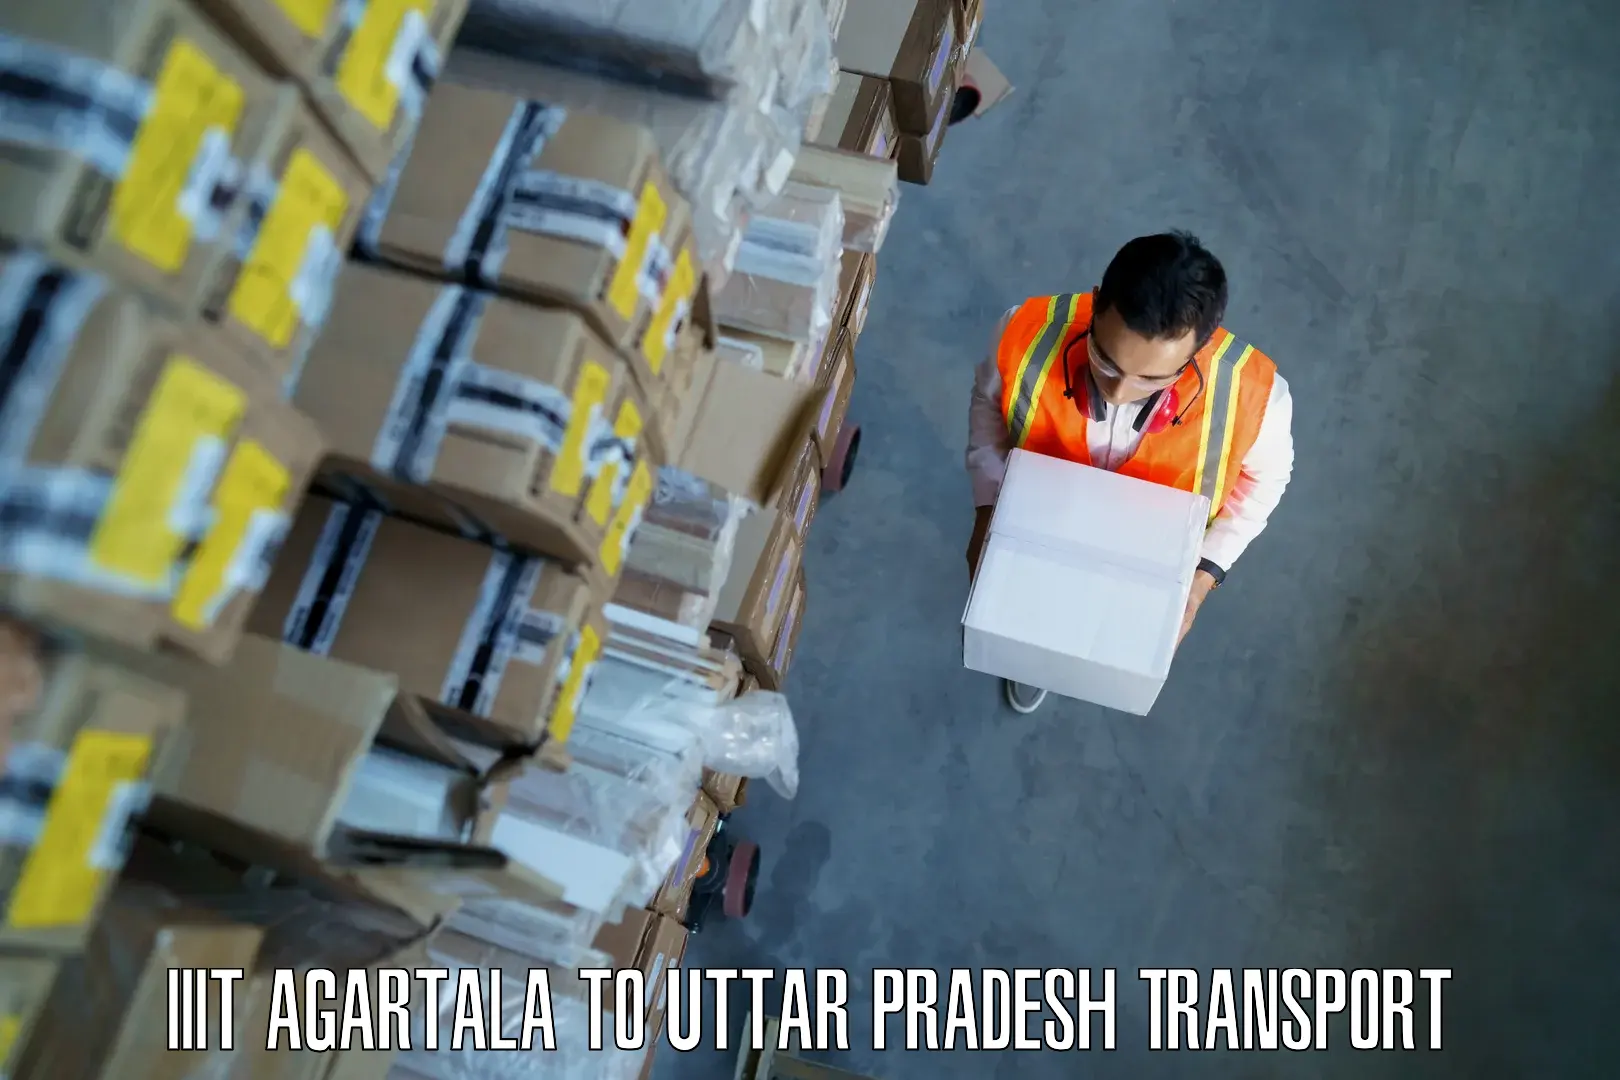 Two wheeler parcel service IIIT Agartala to Mainpuri